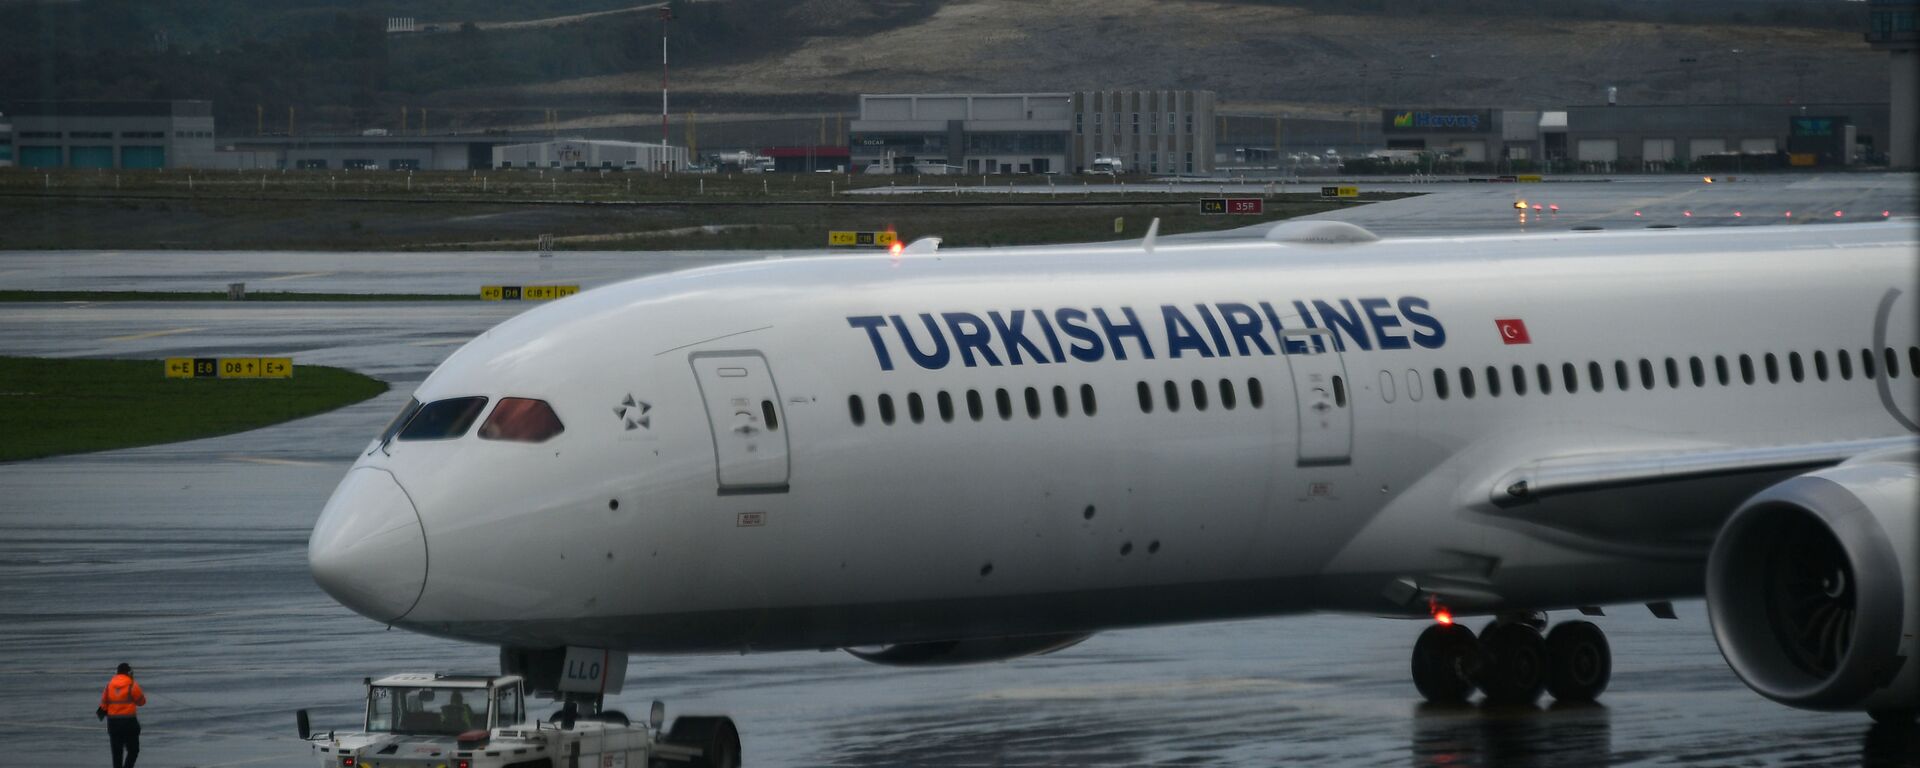 Самолеты авиакомпании Turkish Airlines в Международном аэропорту Стамбул - новый аэропорт в Стамбуле, самый крупный в Турции. - Sputnik Аҧсны, 1920, 13.09.2021